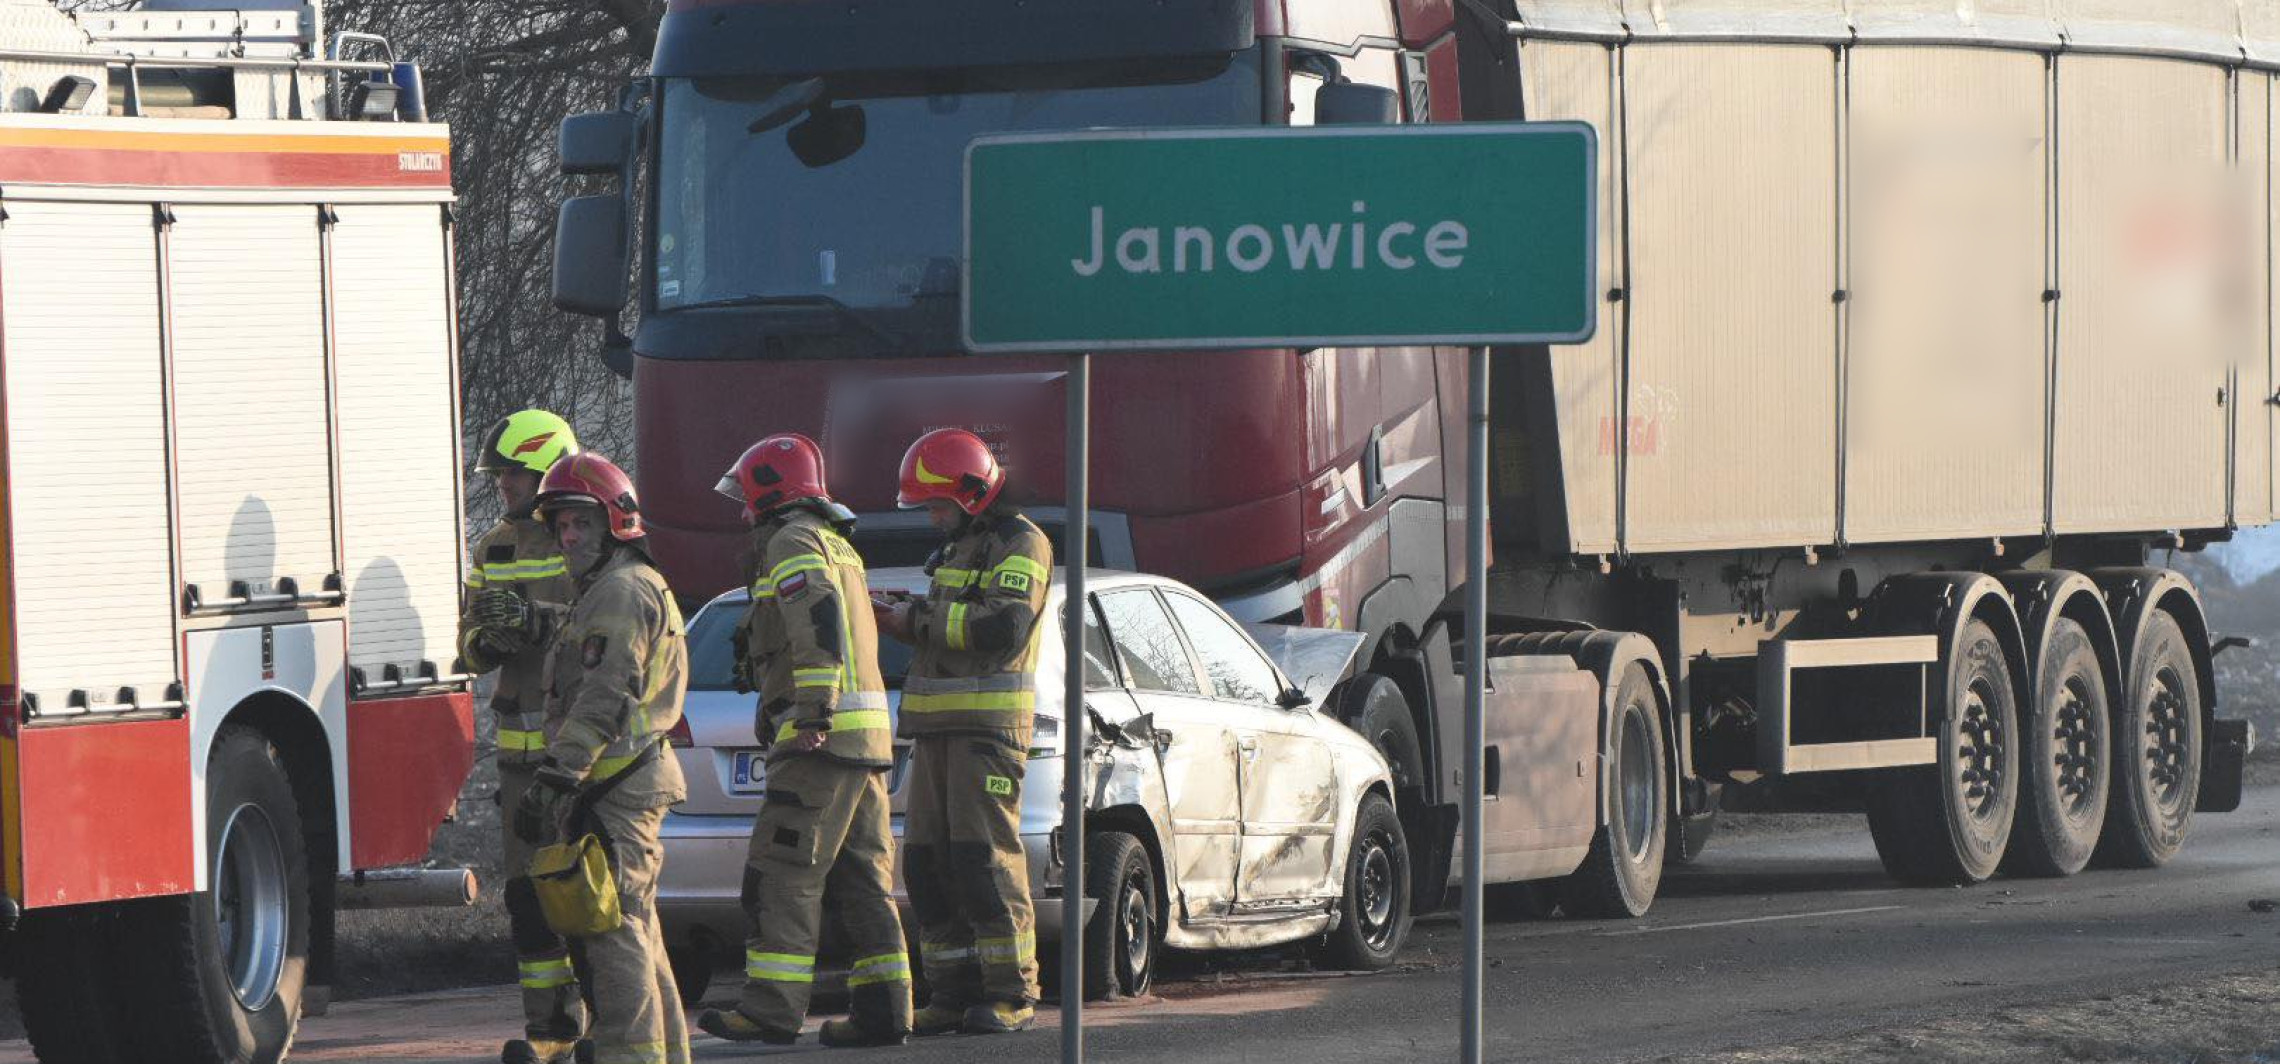 Inowrocław - Wypadek w Janowicach. Kierowca auta jest poszkodowany